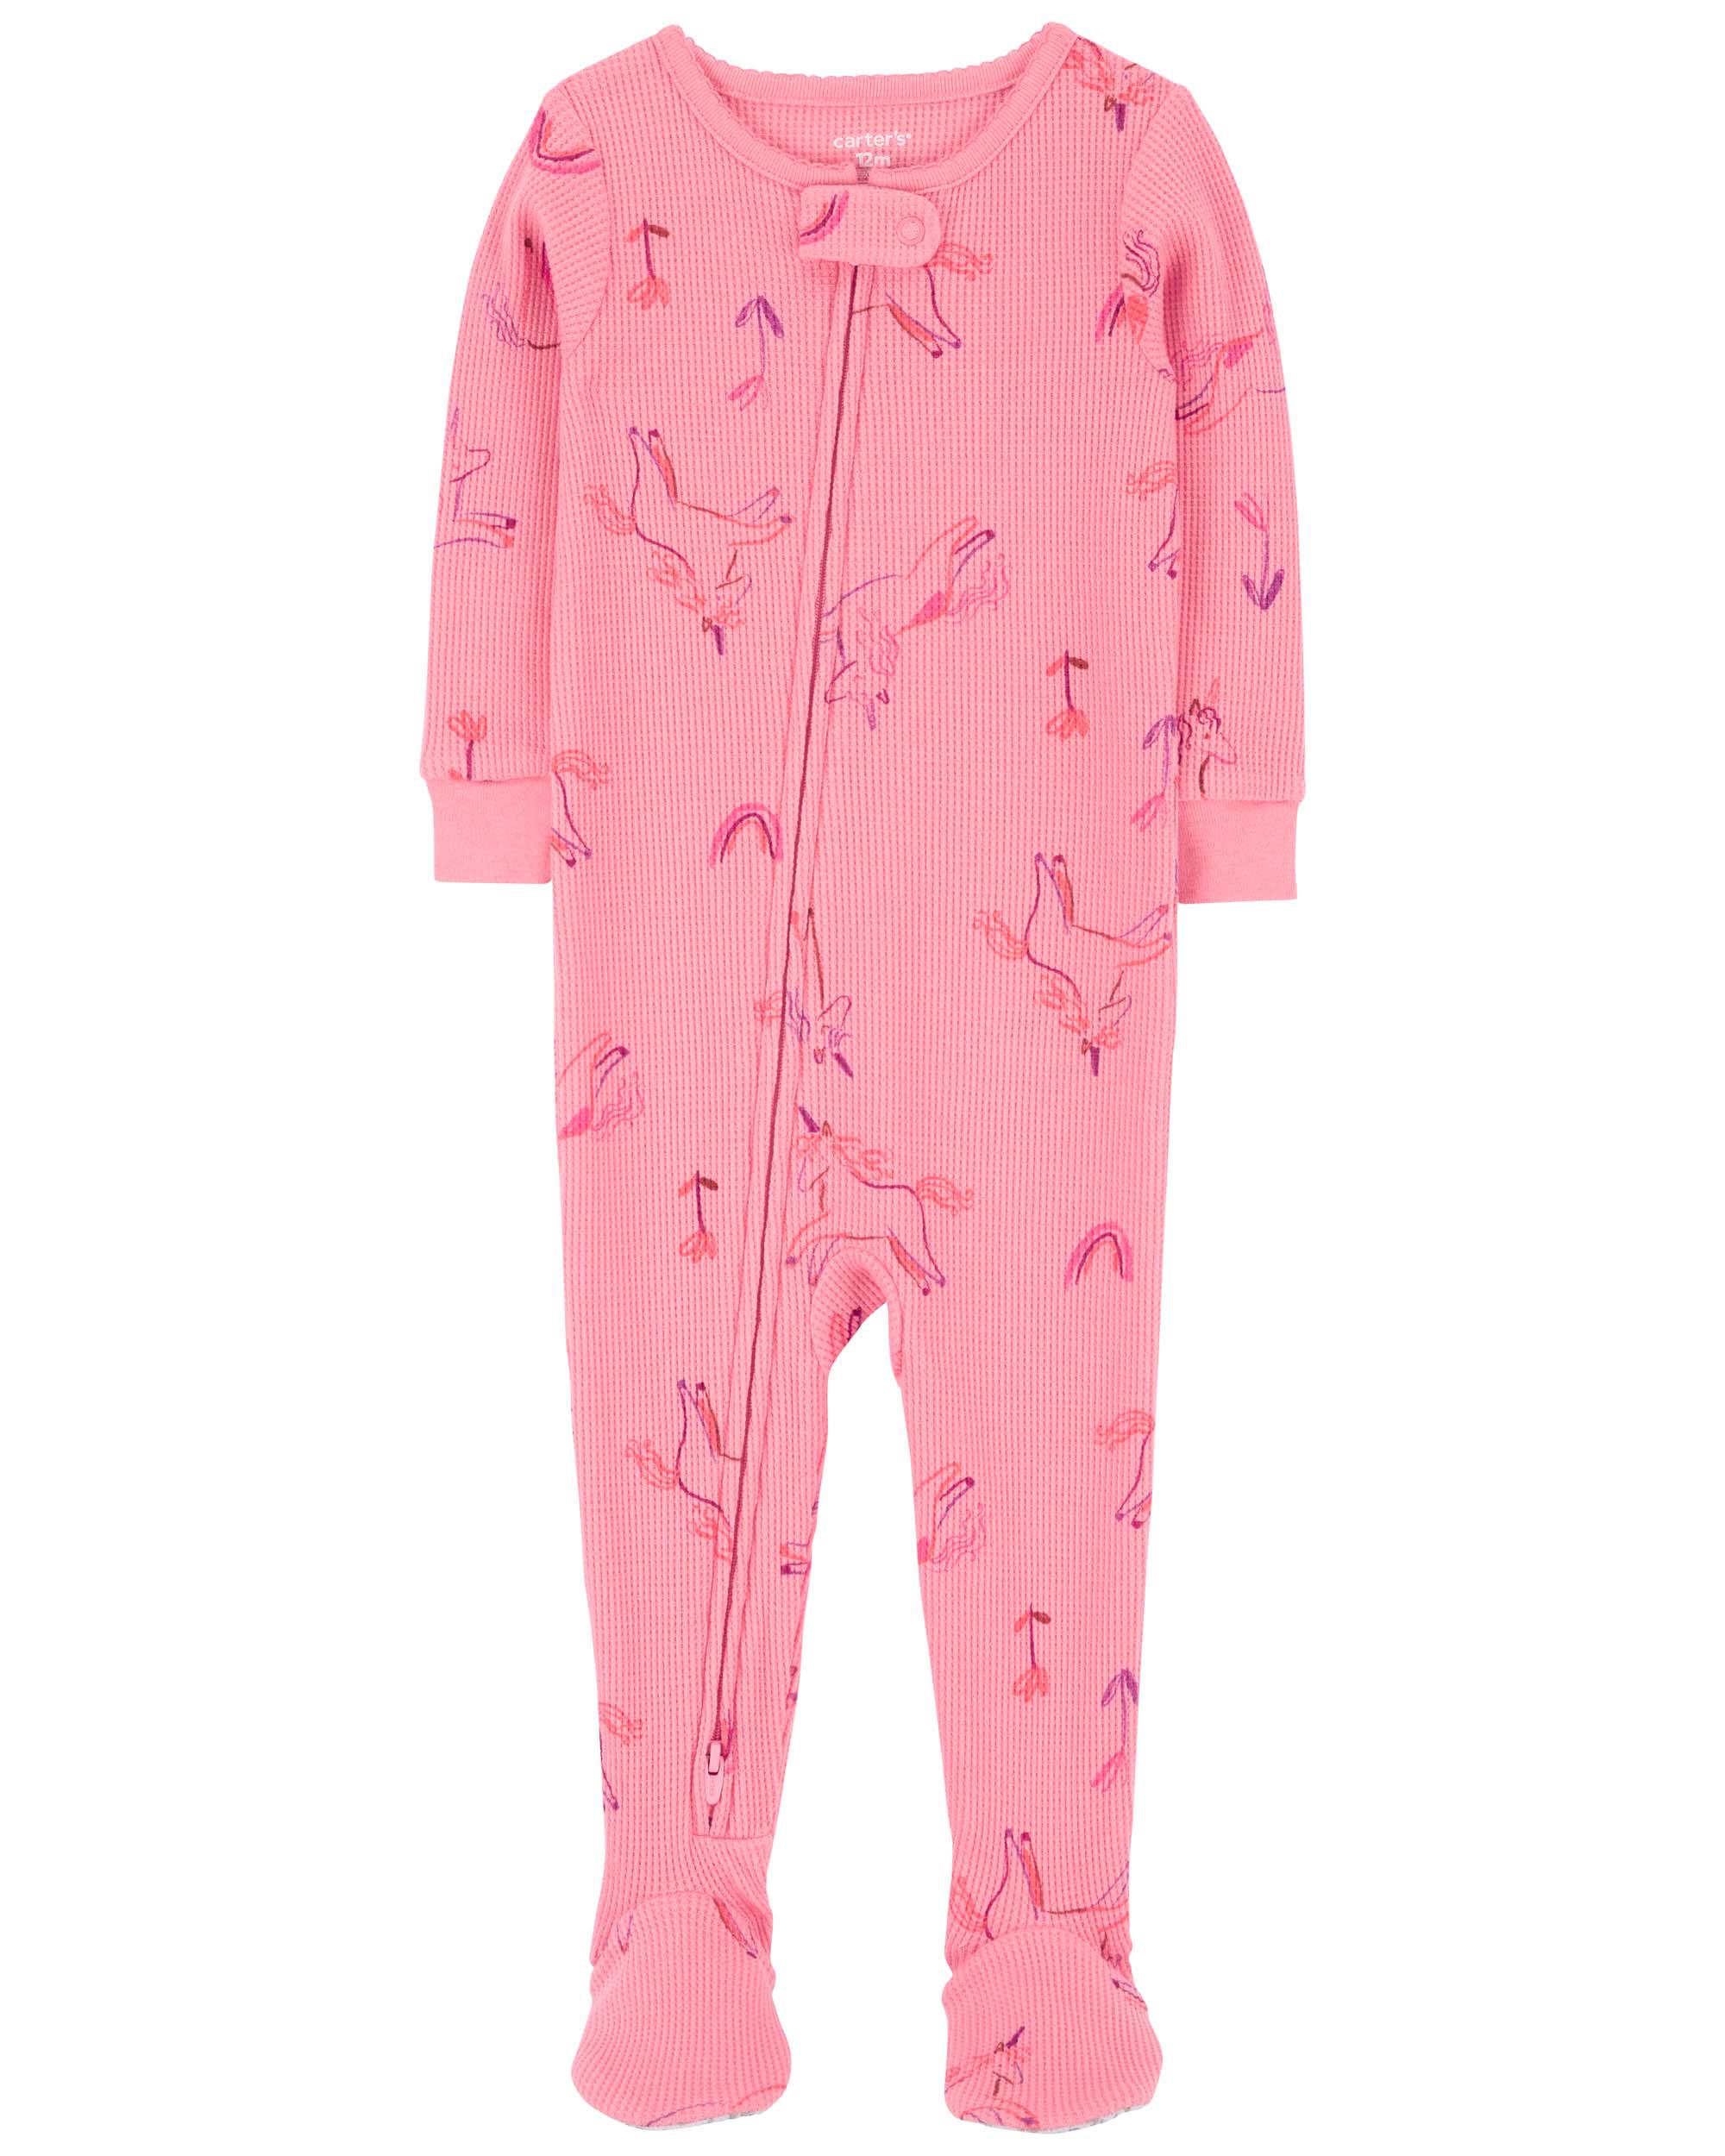 Toddler 1-Piece Unicorn Thermal Footie Pyjamas